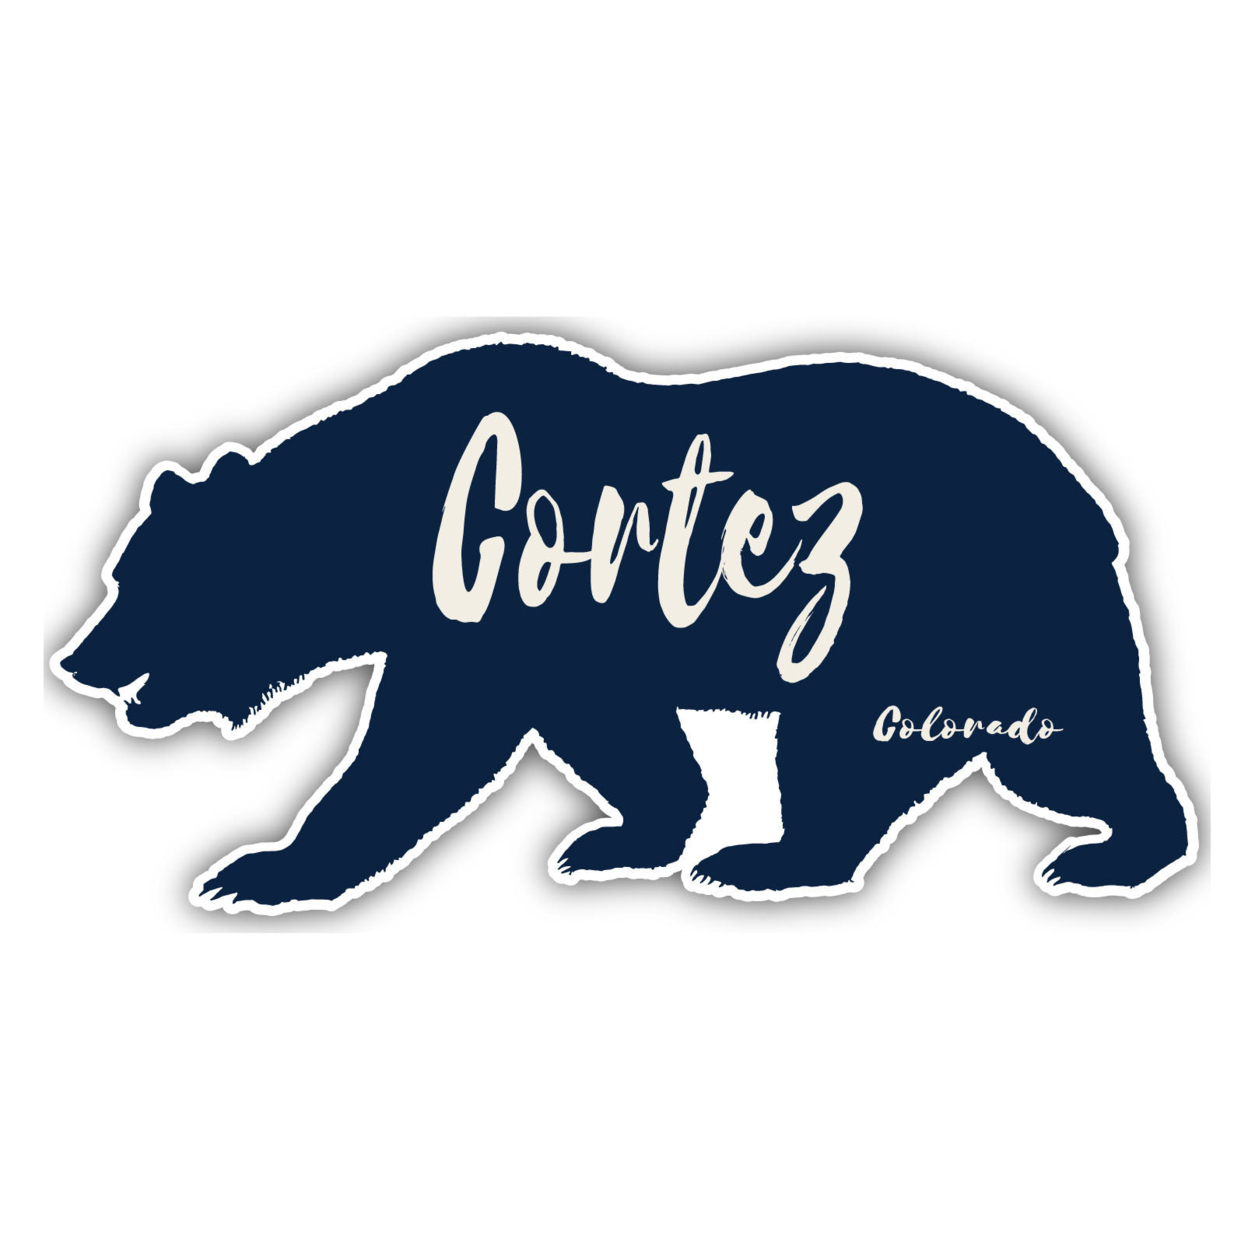 Cortez Colorado Souvenir Decorative Stickers (Choose Theme And Size) - 4-Pack, 6-Inch, Tent